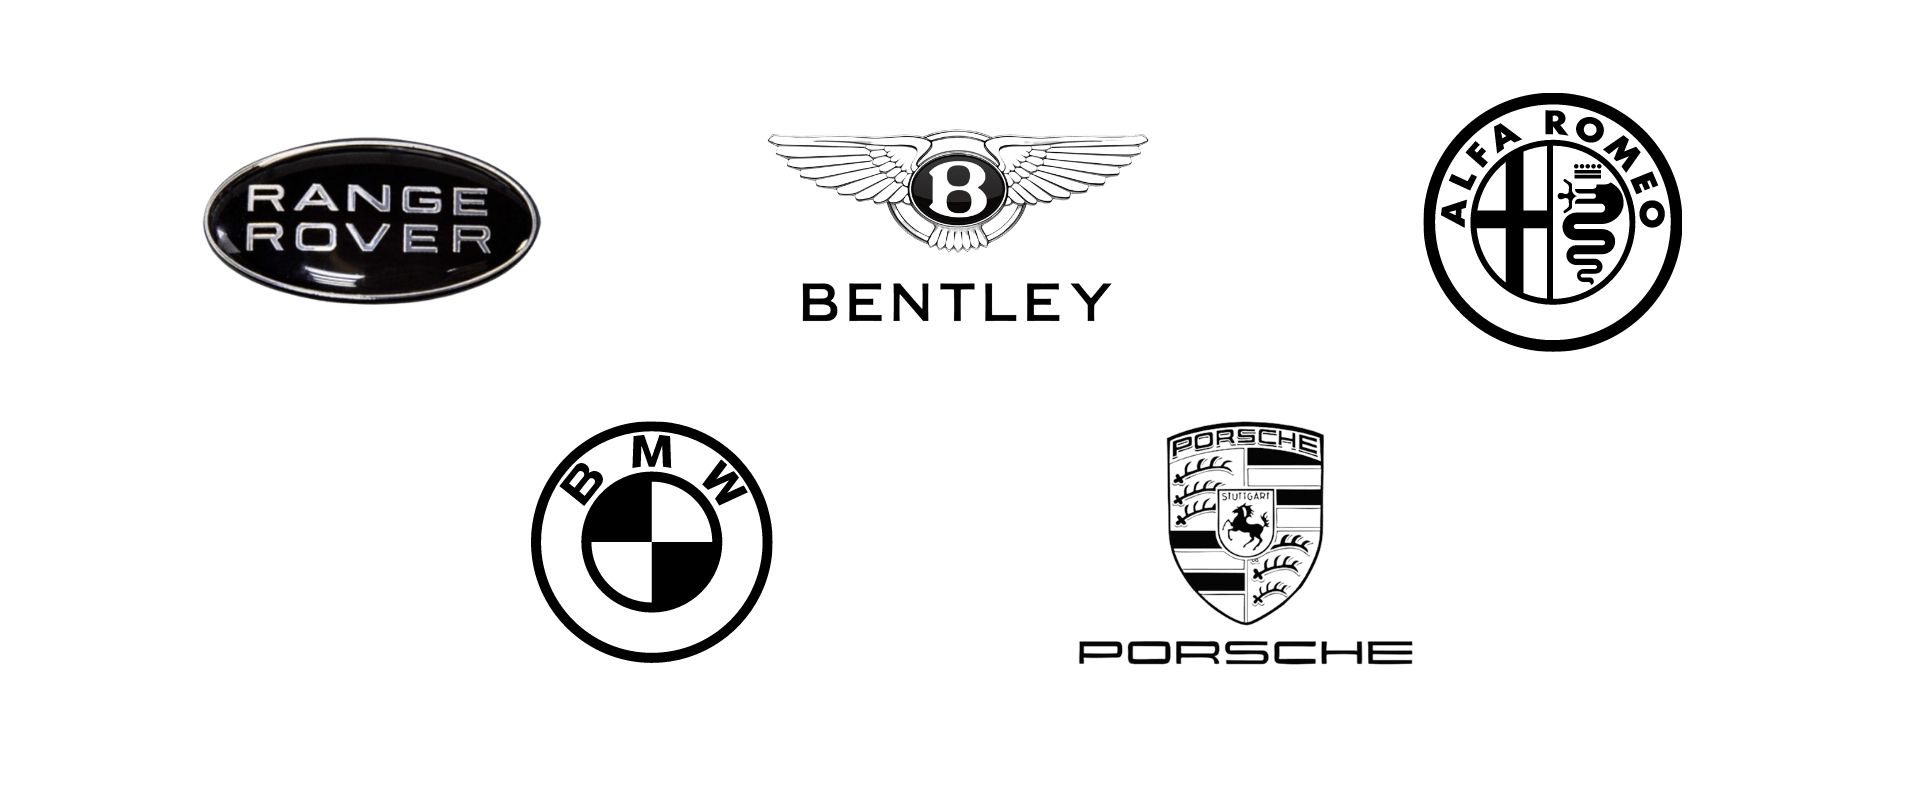 Luxury car logos featuring range rover, bentley, and porsche